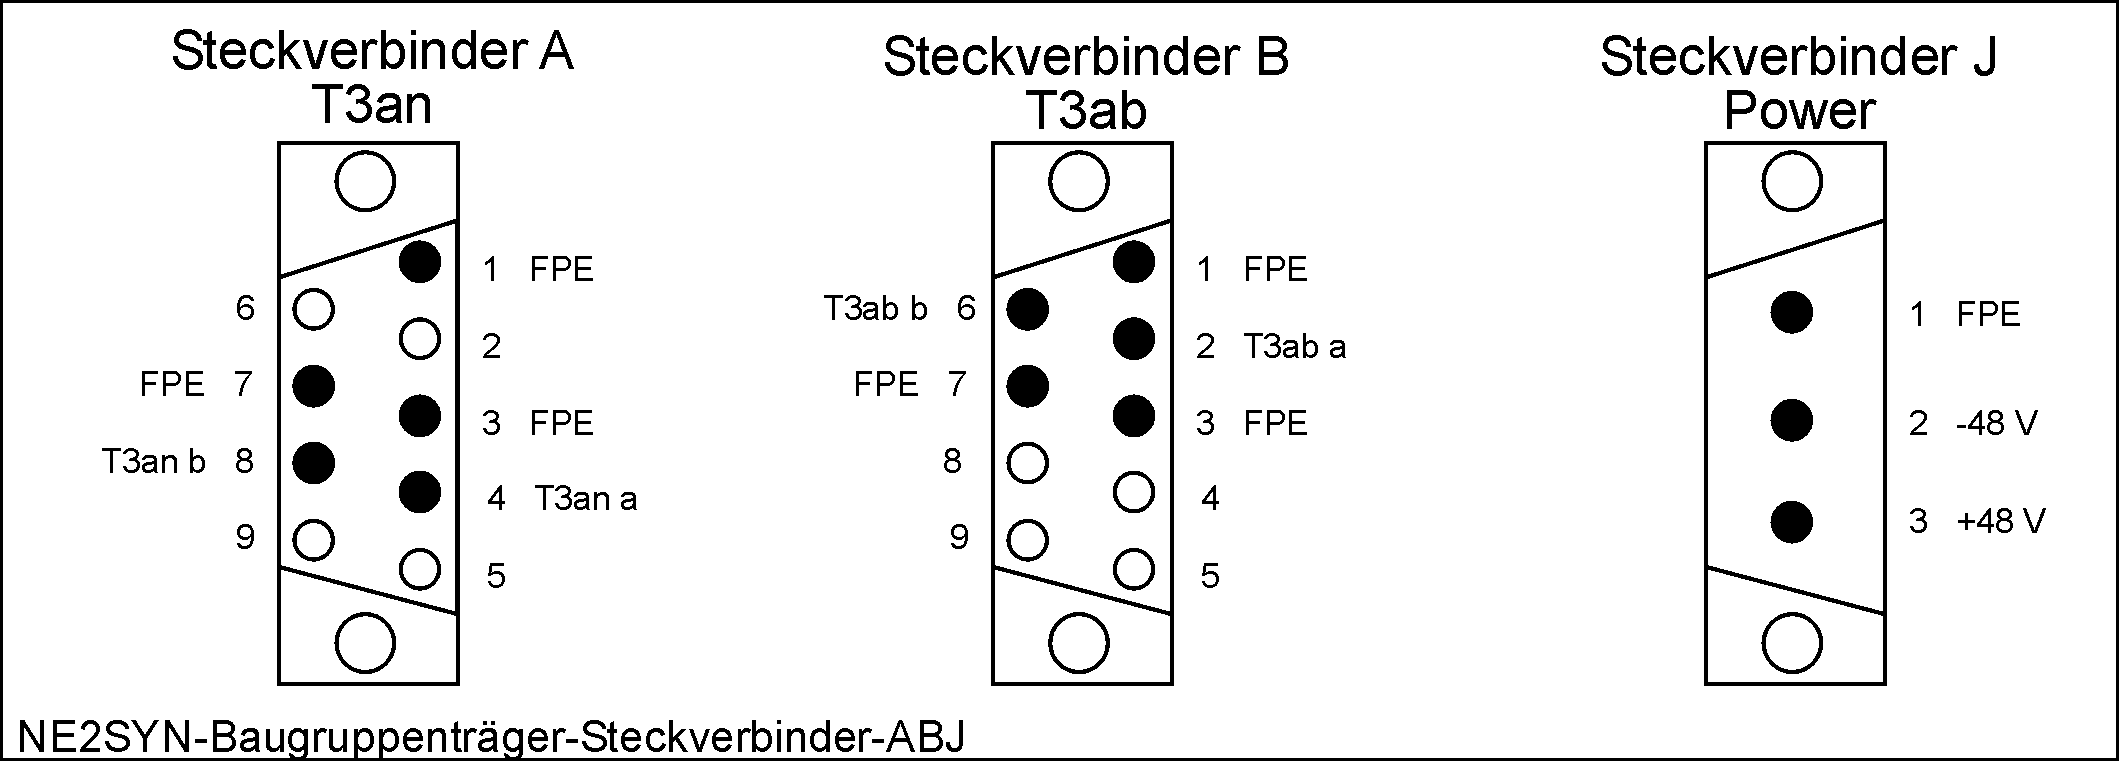 DESK-GmbH_NE2SYN-Baugruppenträger-Steckverbinder-ABJ